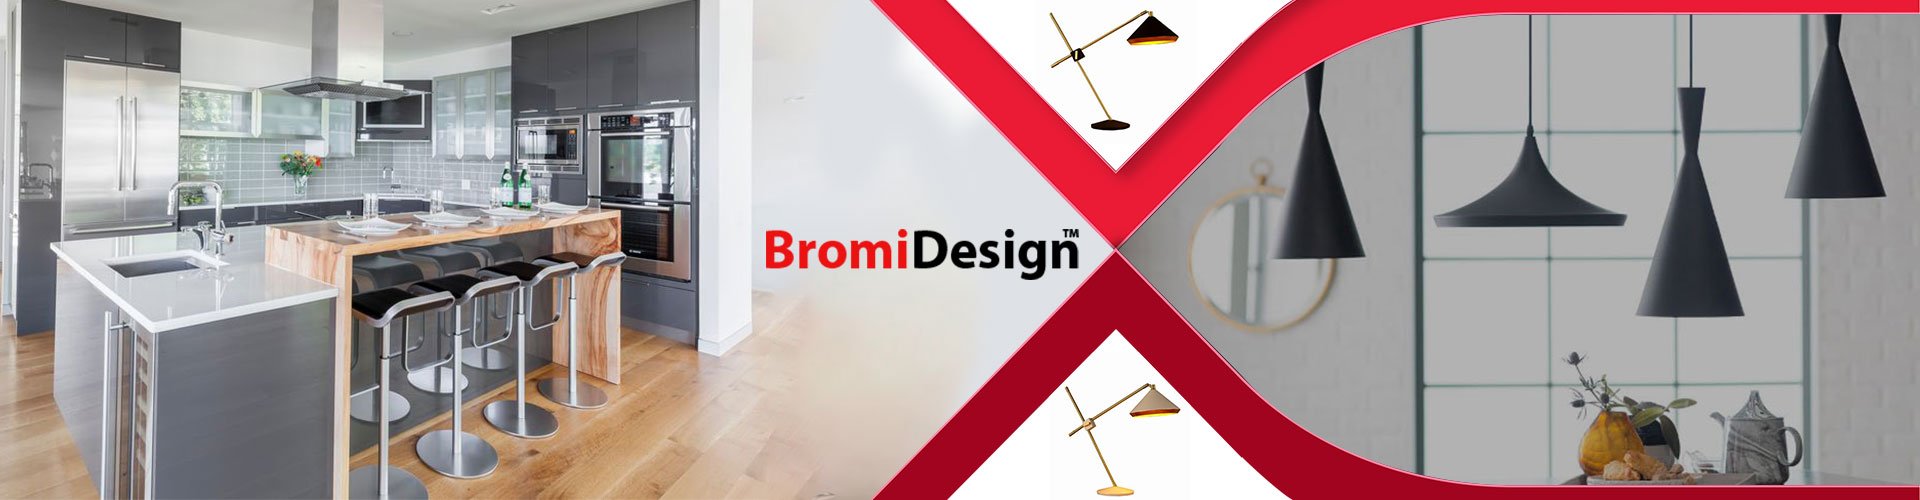 Bromi Design: Premier Furniture & Lighting Brand - GwG Outlet– GWG Outlet